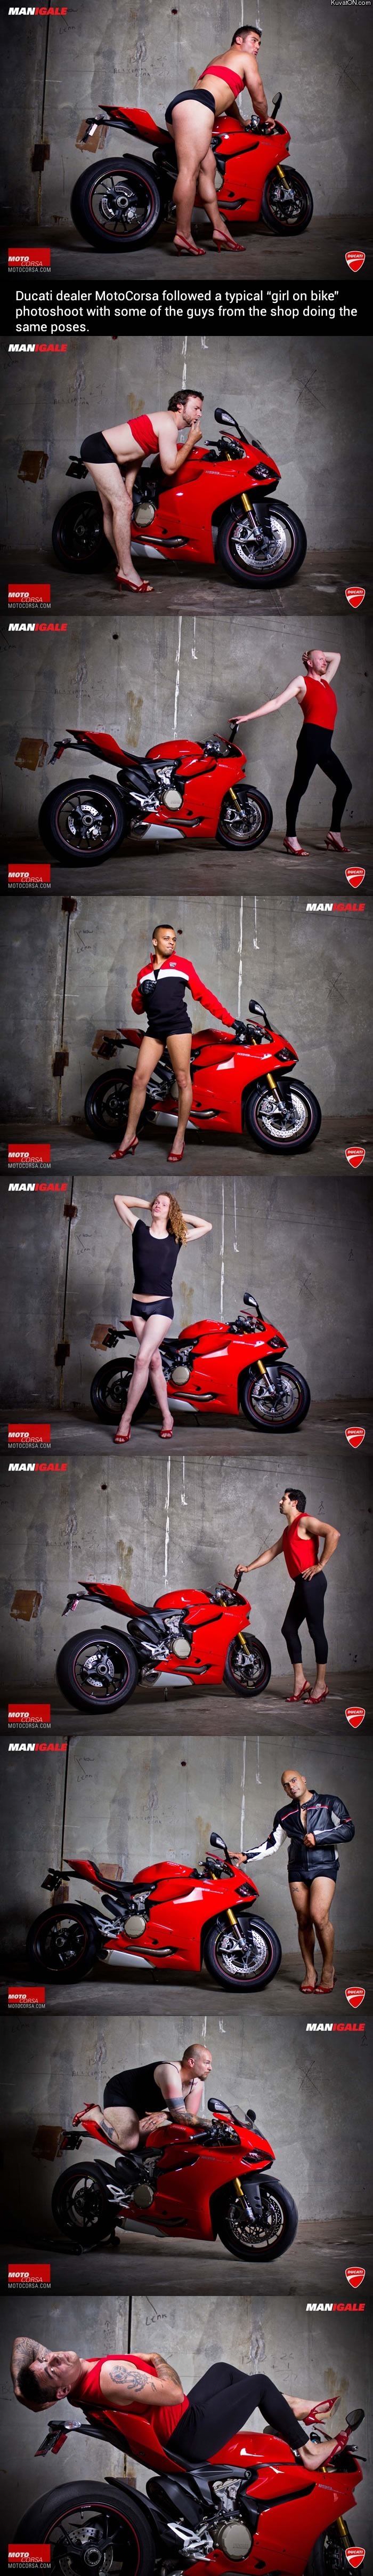 motorcycle_poses.jpg